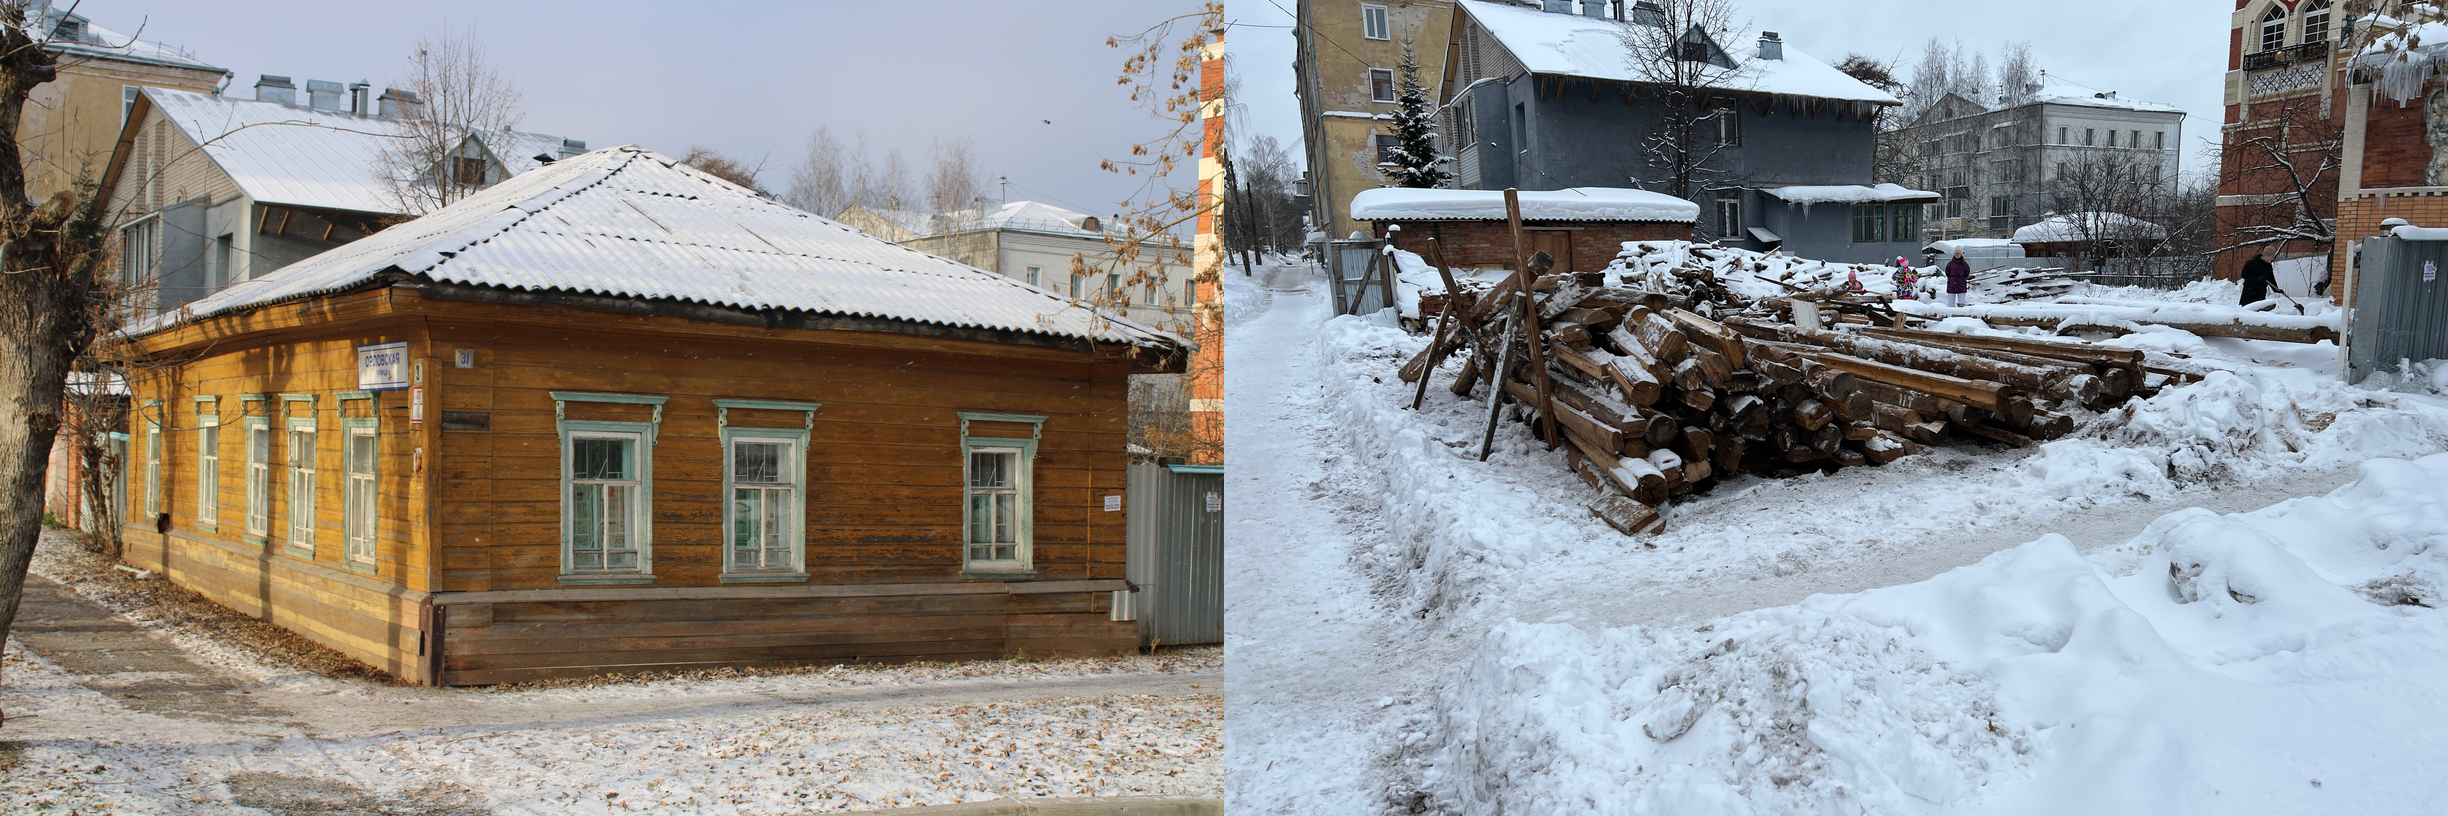 В историческом центре Кирова сносят старинный деревянный дом